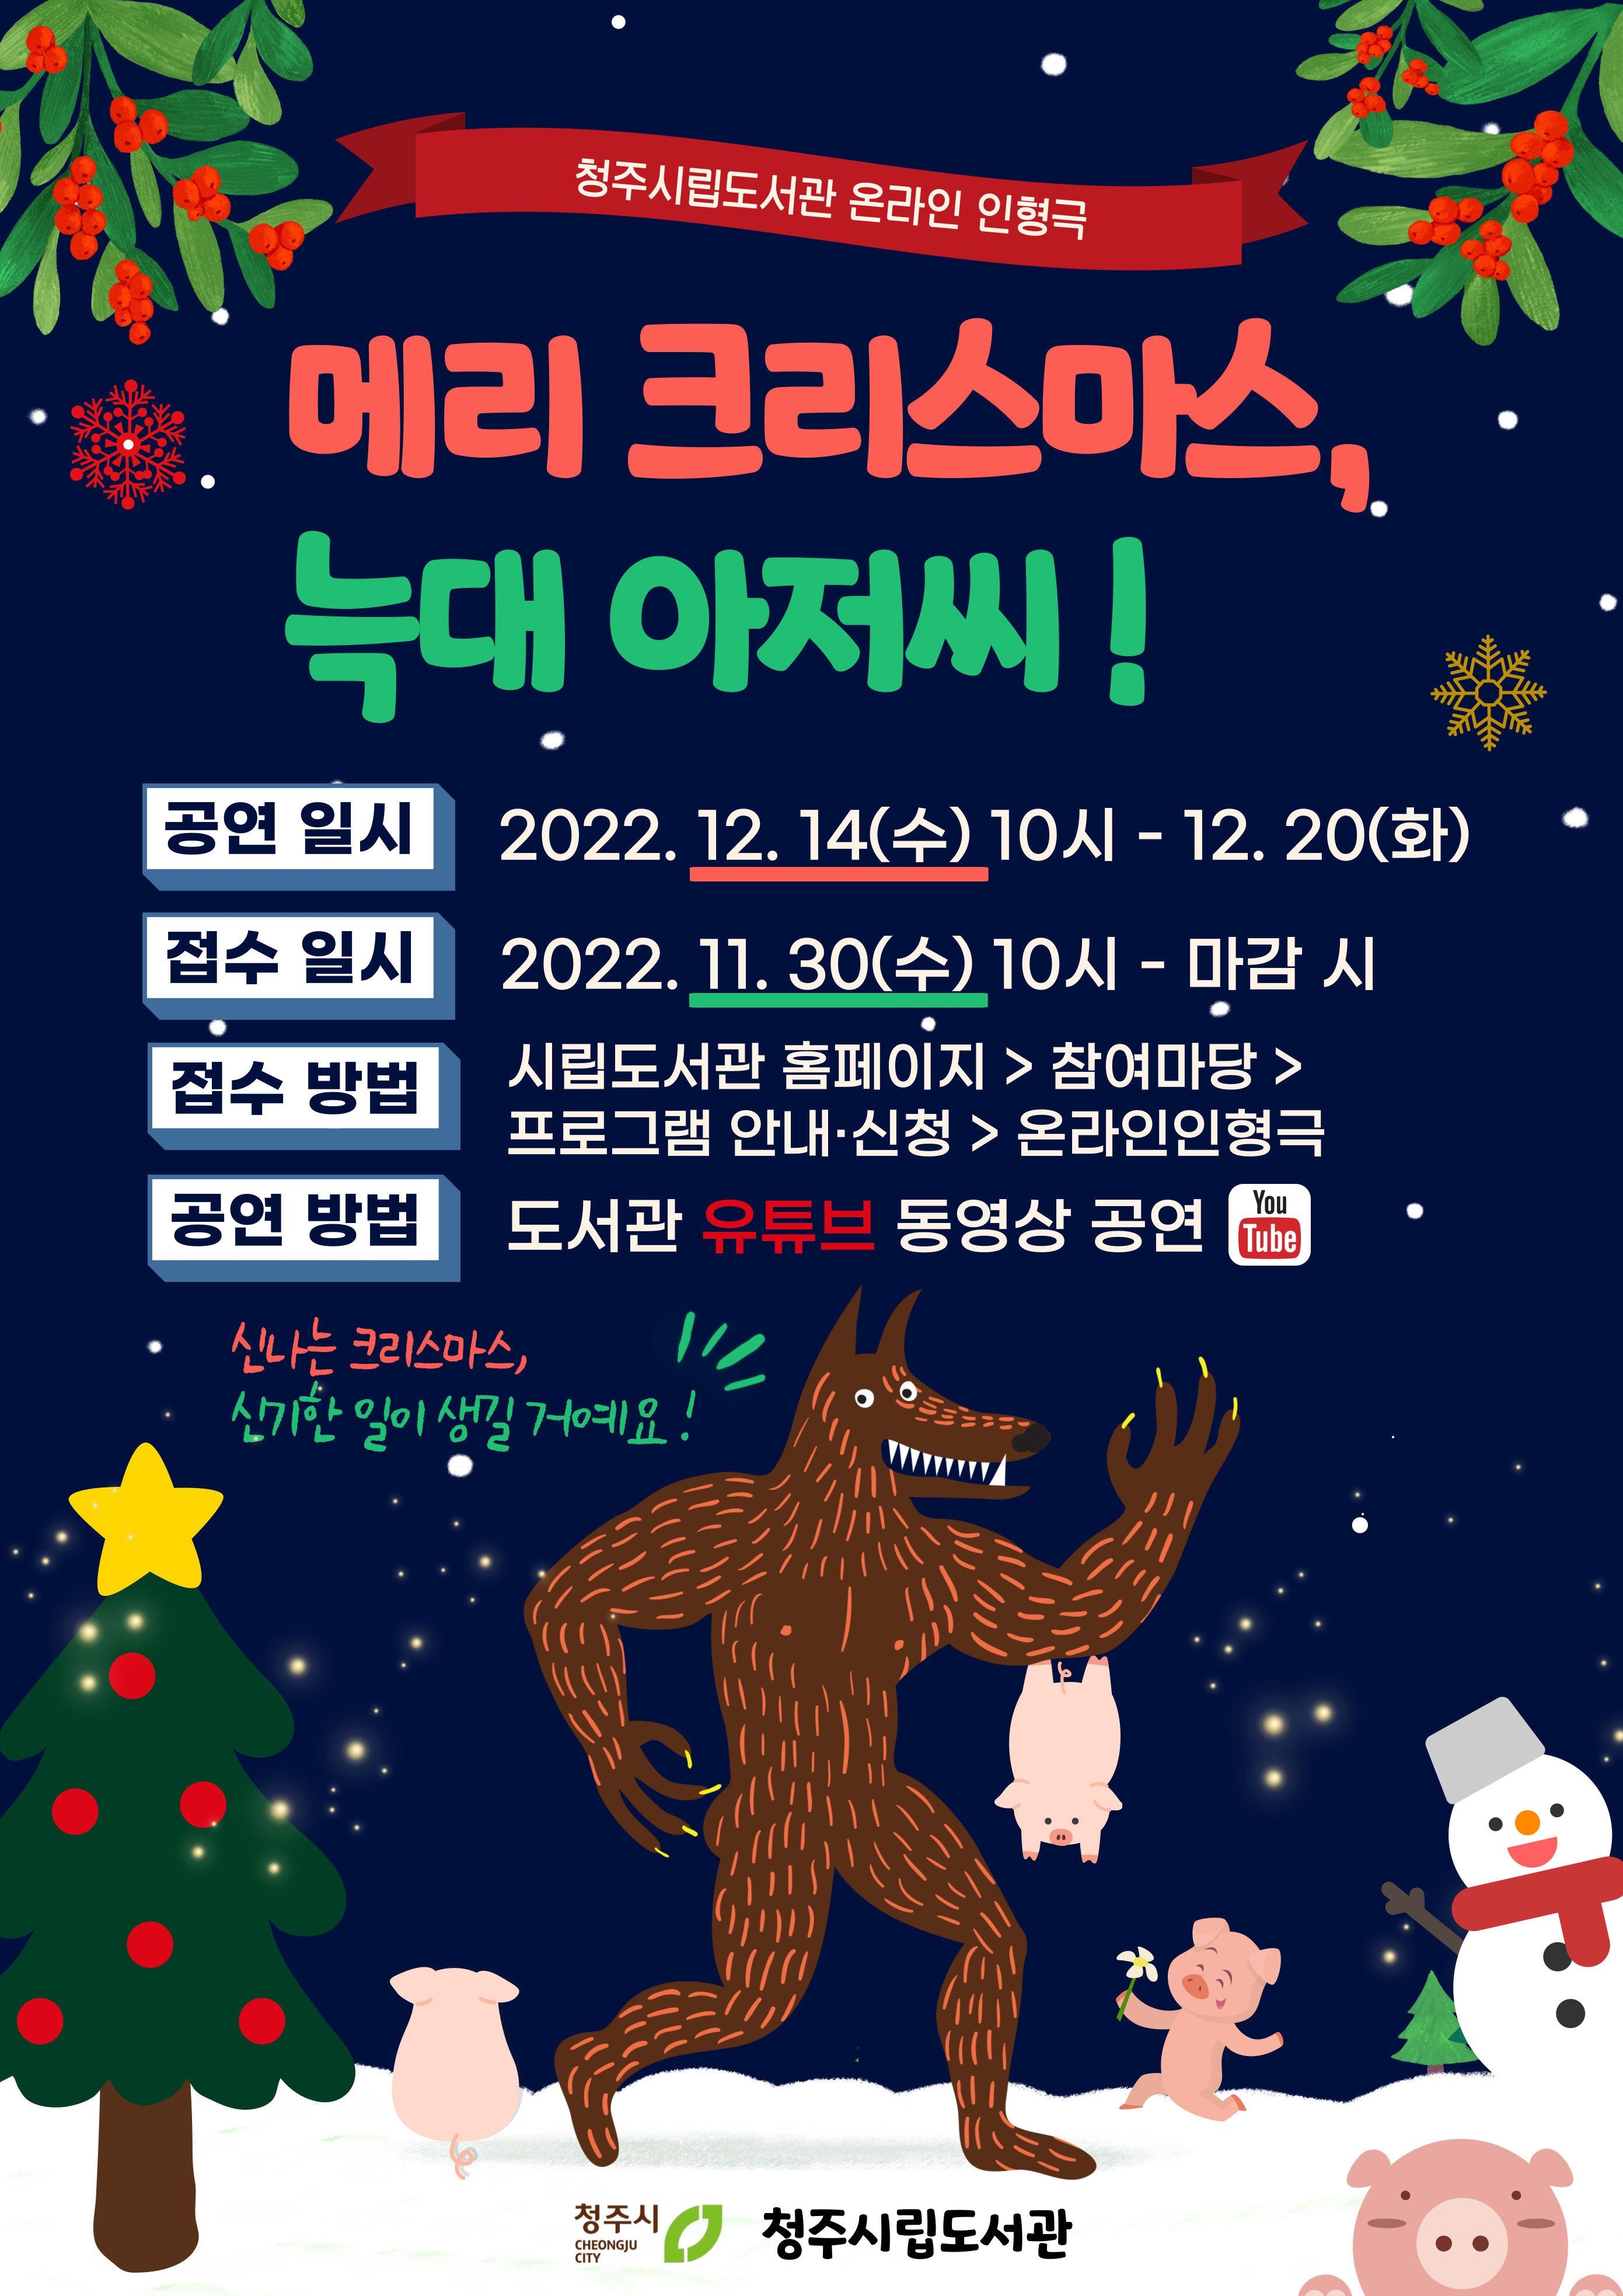 청주시립도서관 온라인인형극 <메리 크리스마스, 늑대 아저씨!>공연 안내(11월 30일 접수)